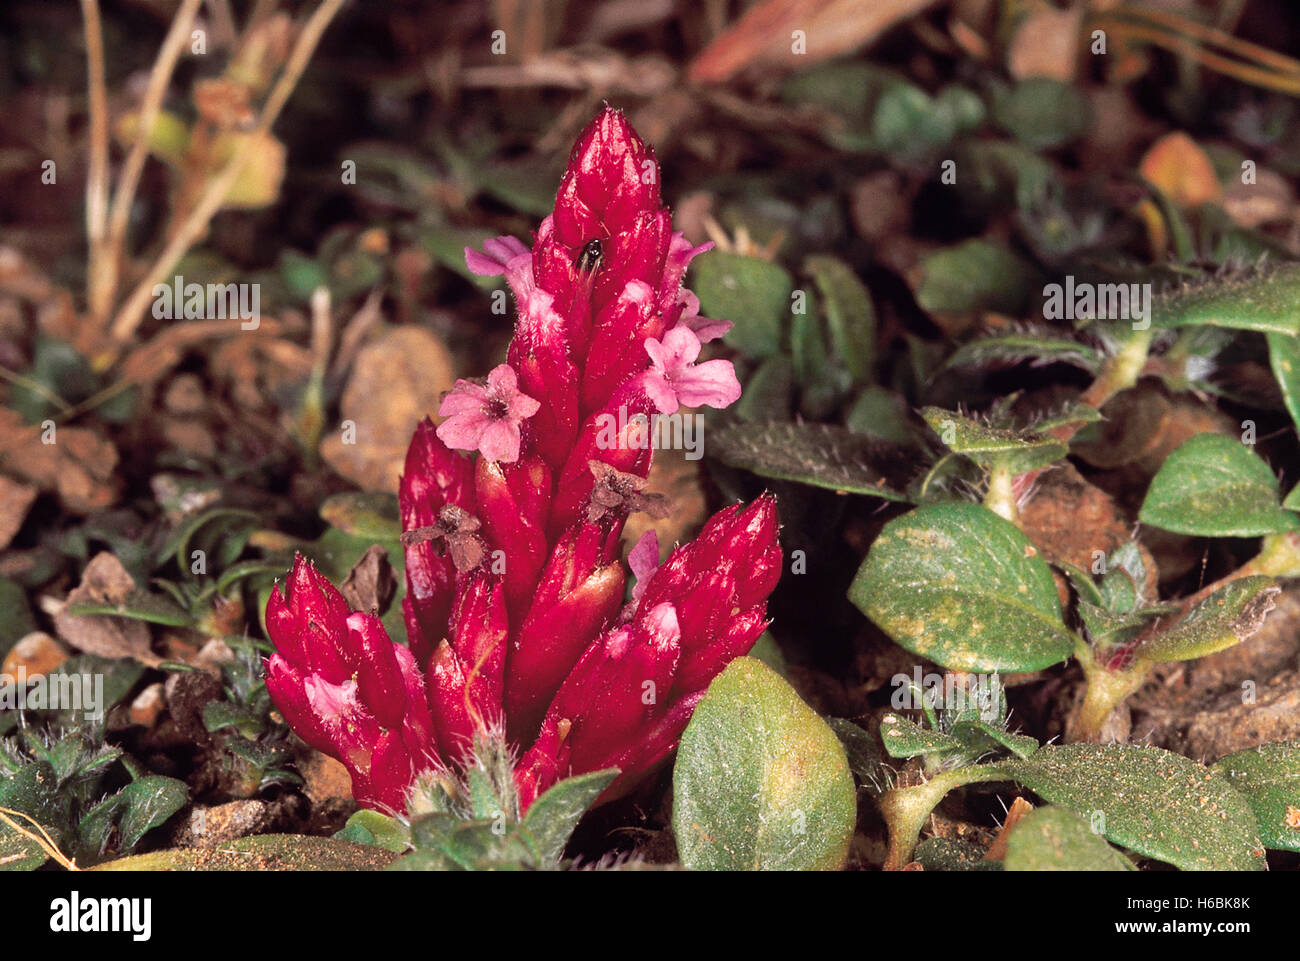 Striga gesnerioides. Familia: scrophularaceae. Una raíz parásito que se ve sólo cuando las flores. generalmente se encuentra en la hierba húmeda Foto de stock